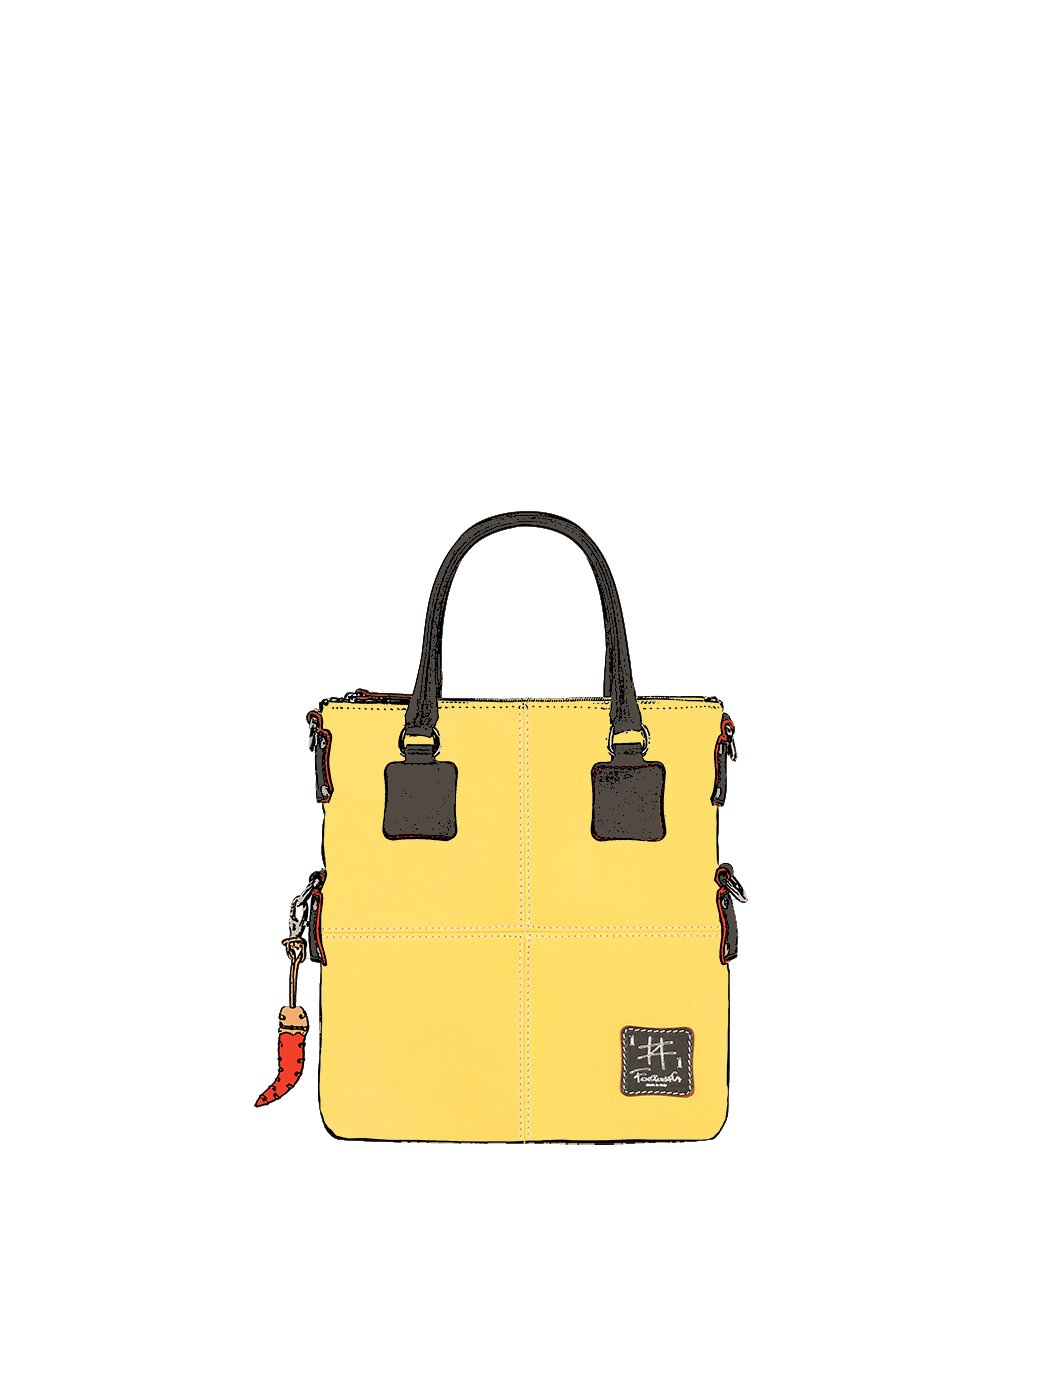 Дизайнерская мини - сумка из коллекции Fortunata желтого цвета